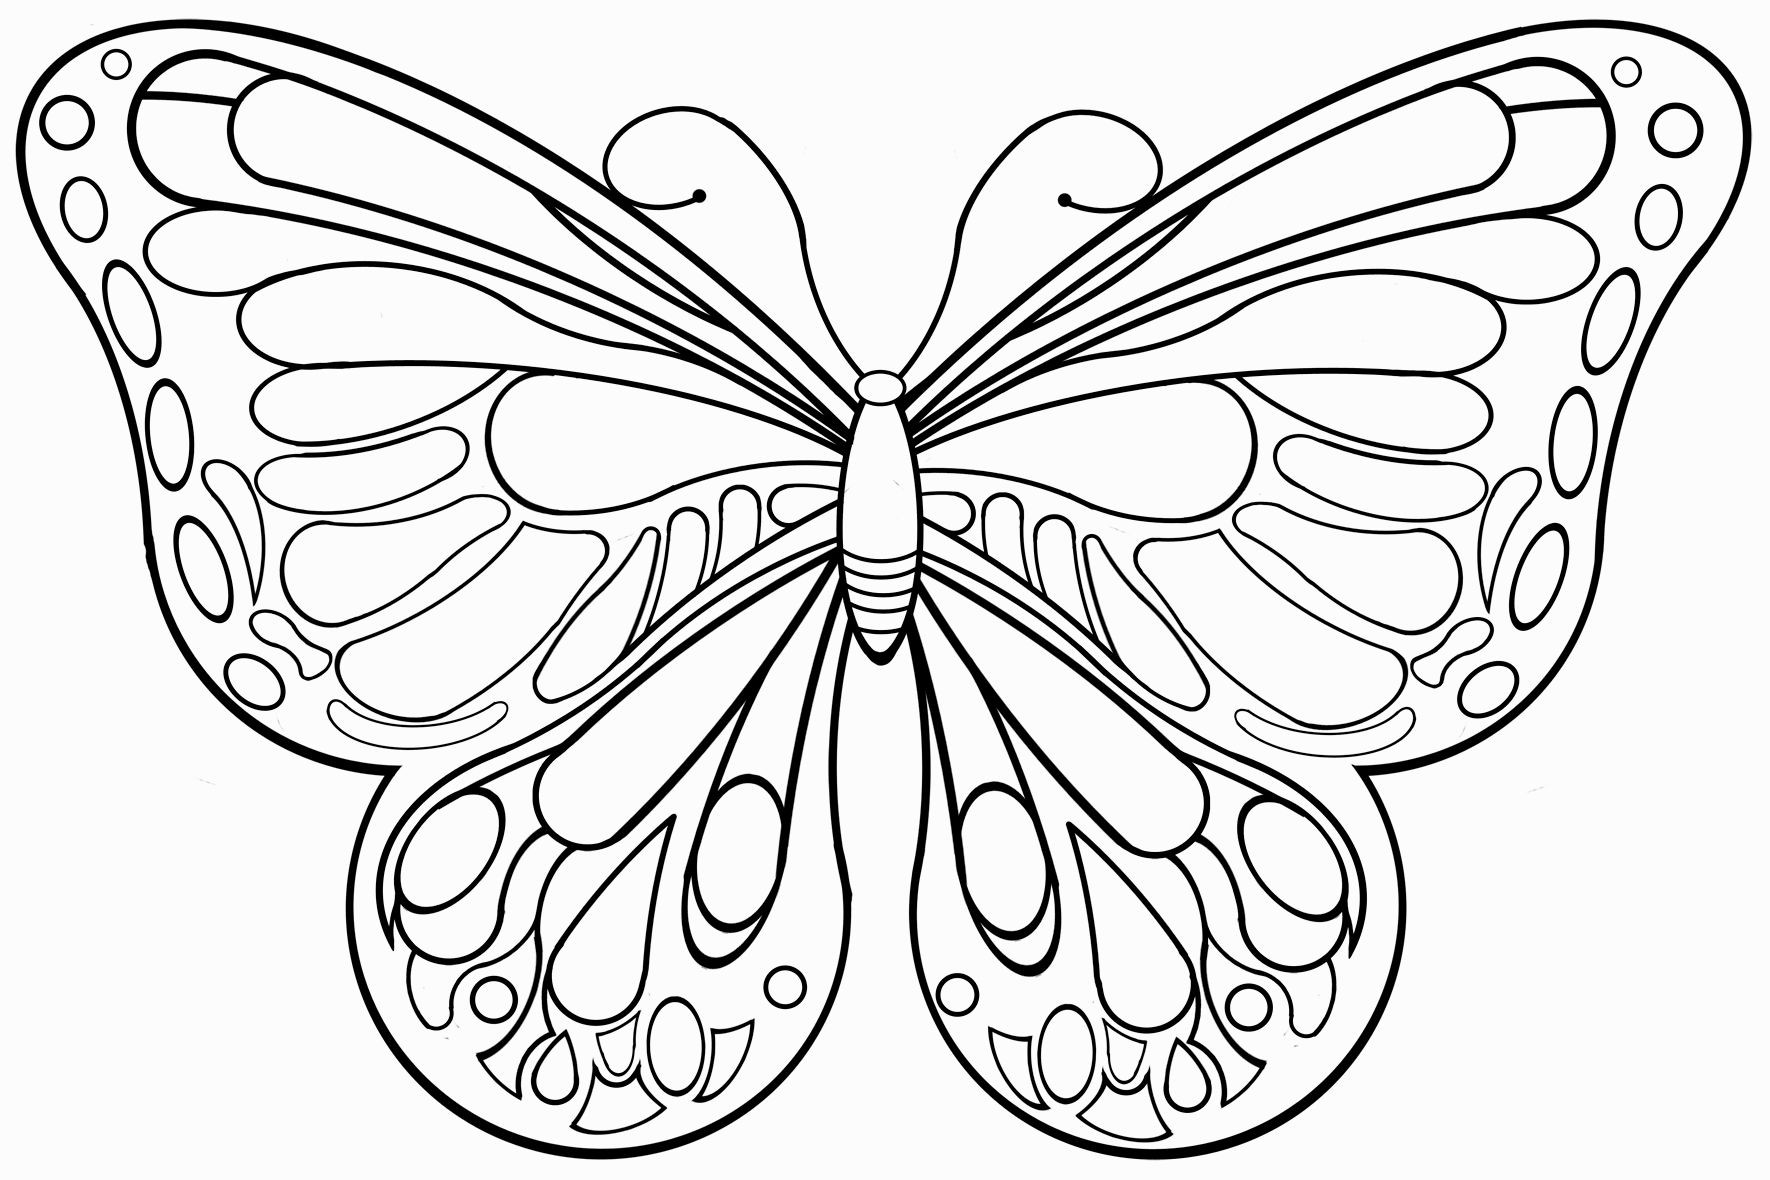 Ausmalbilder Schmetterling
 schmetterlinge zum ausdrucken Malvorlagentv